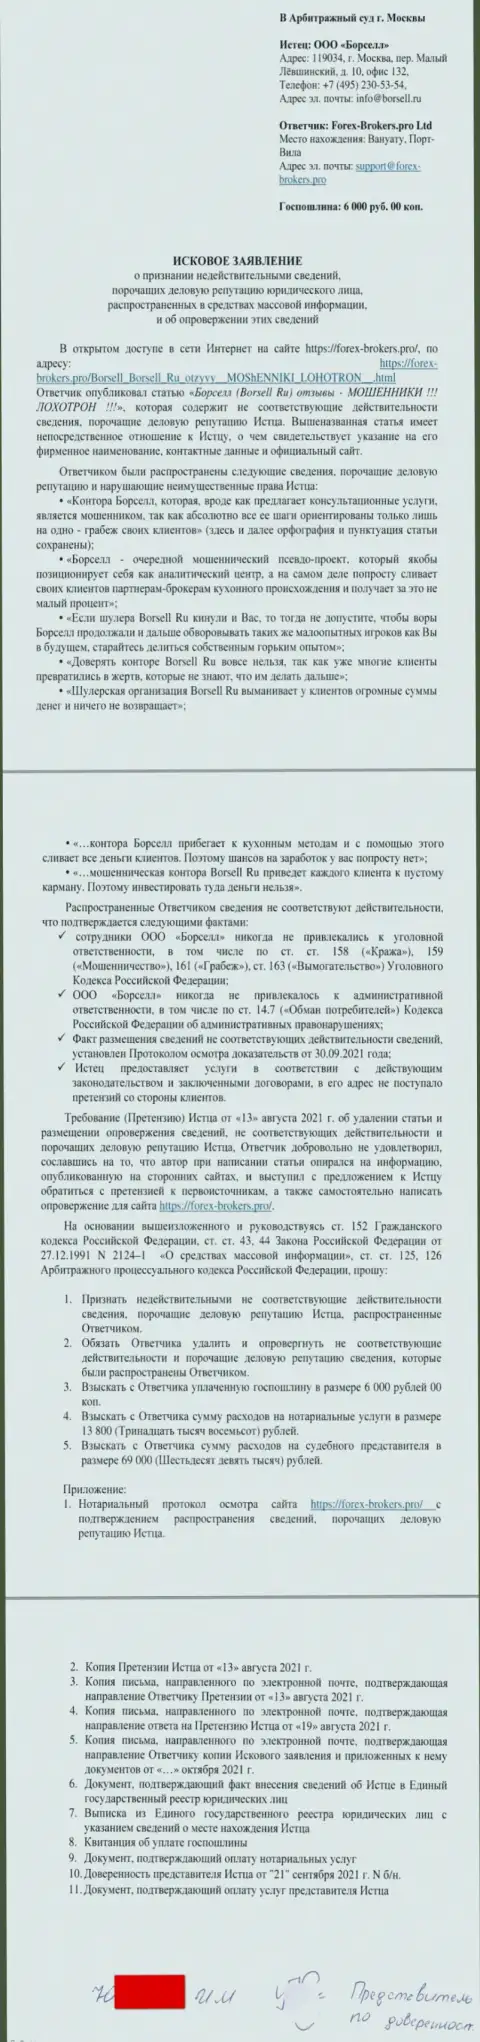 Непосредственно заявление в суд от некого представителя аналитической конторы Borsell Ru